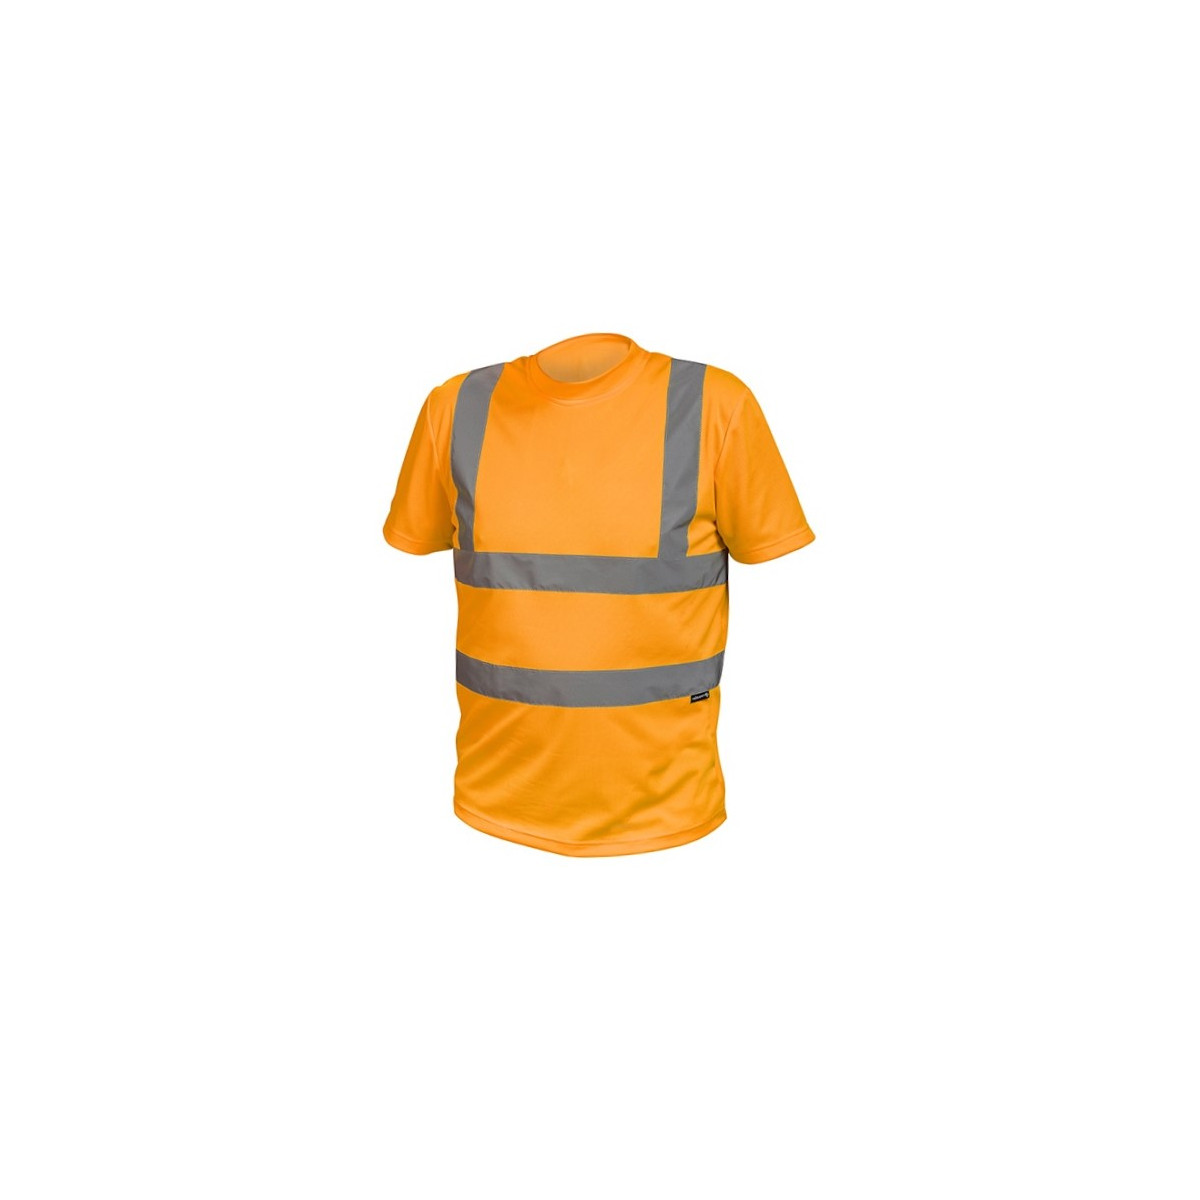 odblaskowa-odziez-hi-vis - T-shirt ostrzegawczy pomarańczowy hi vis rossel HT5K339 Hogert Technik